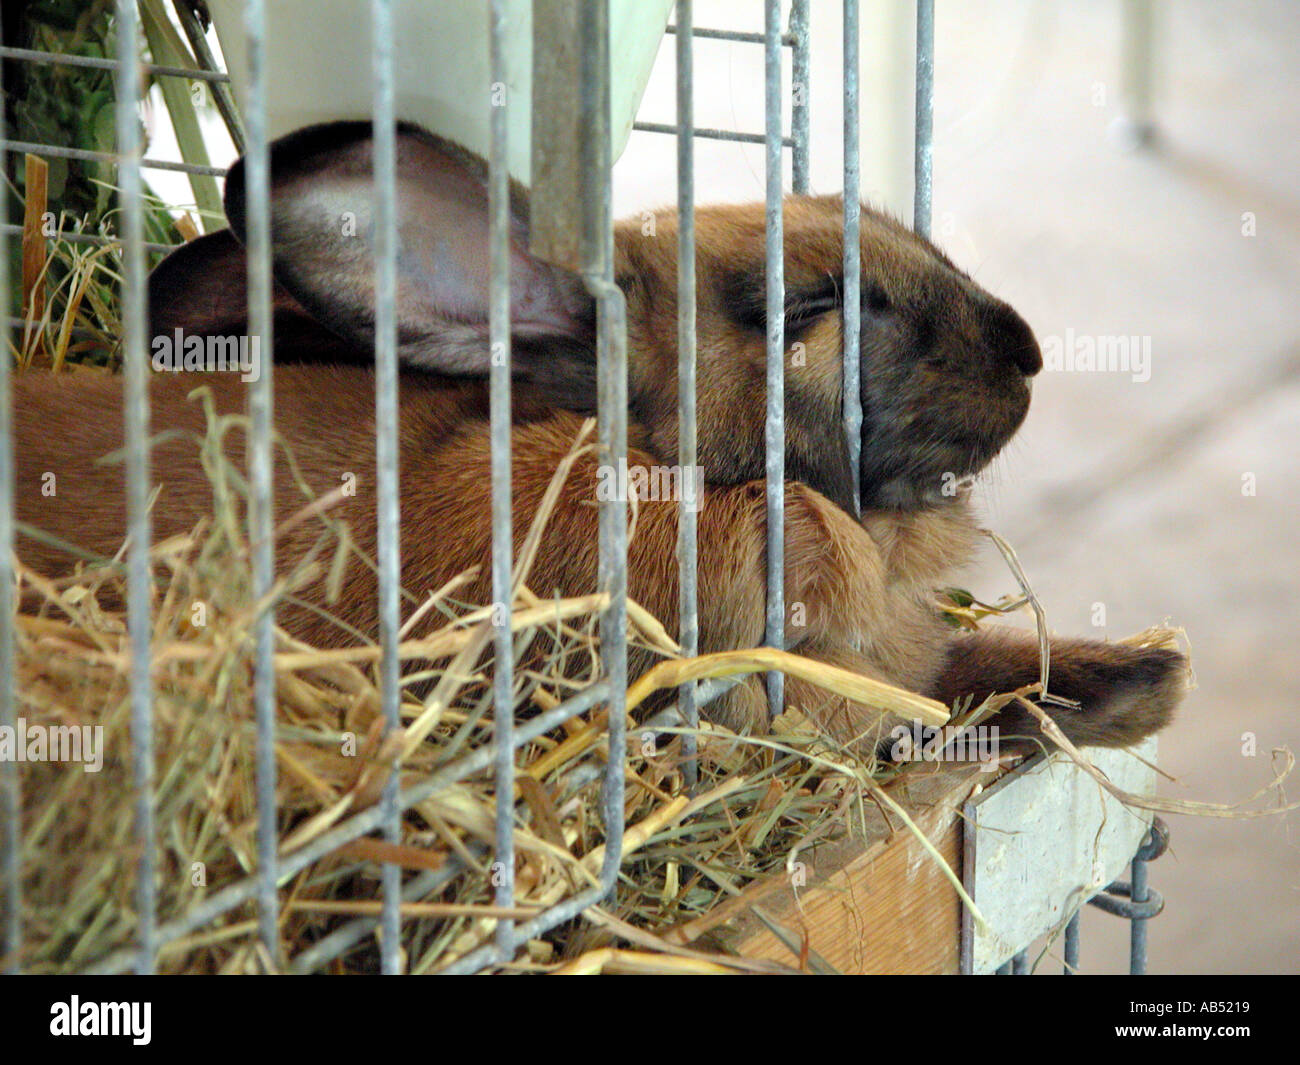 schlafen Kaninchen in einer Ausstellung Stockfotografie - Alamy